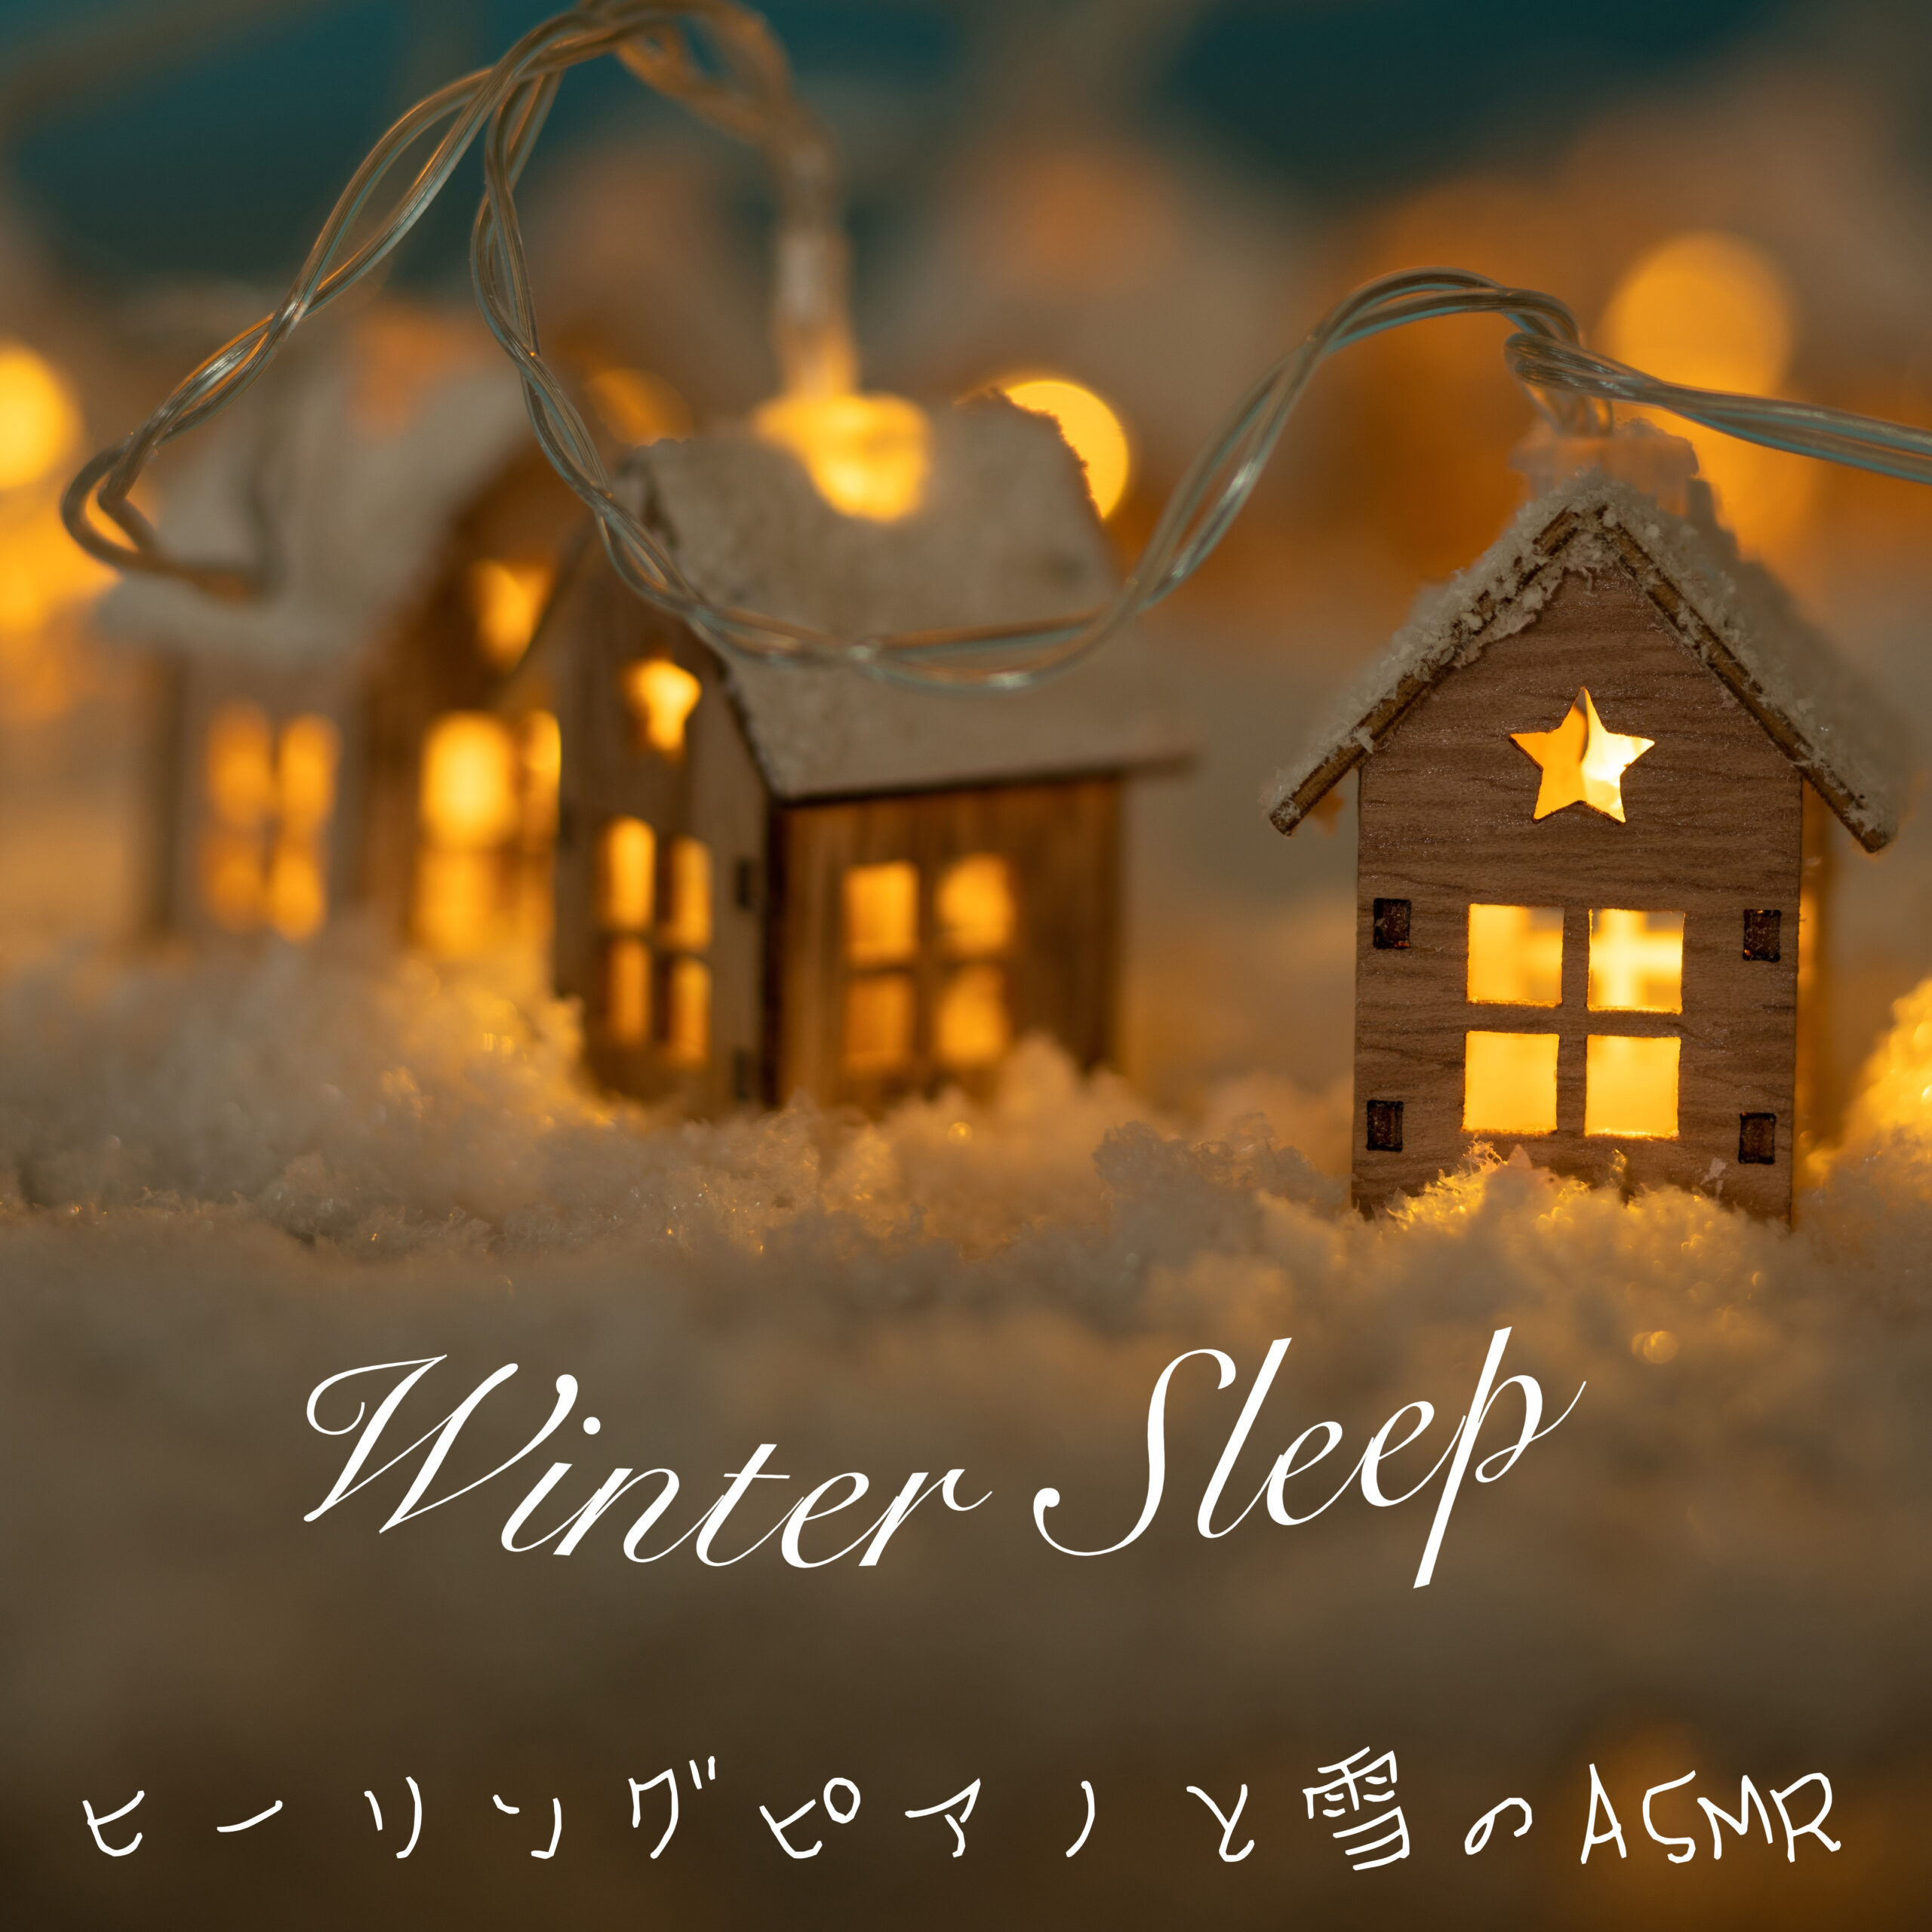 Winter Sleep ヒーリングピアノと雪のASMR 癒しのピアノとリラックスできる雪の音でぐっすり眠る 睡眠用 作業用 読書用 チルアウト